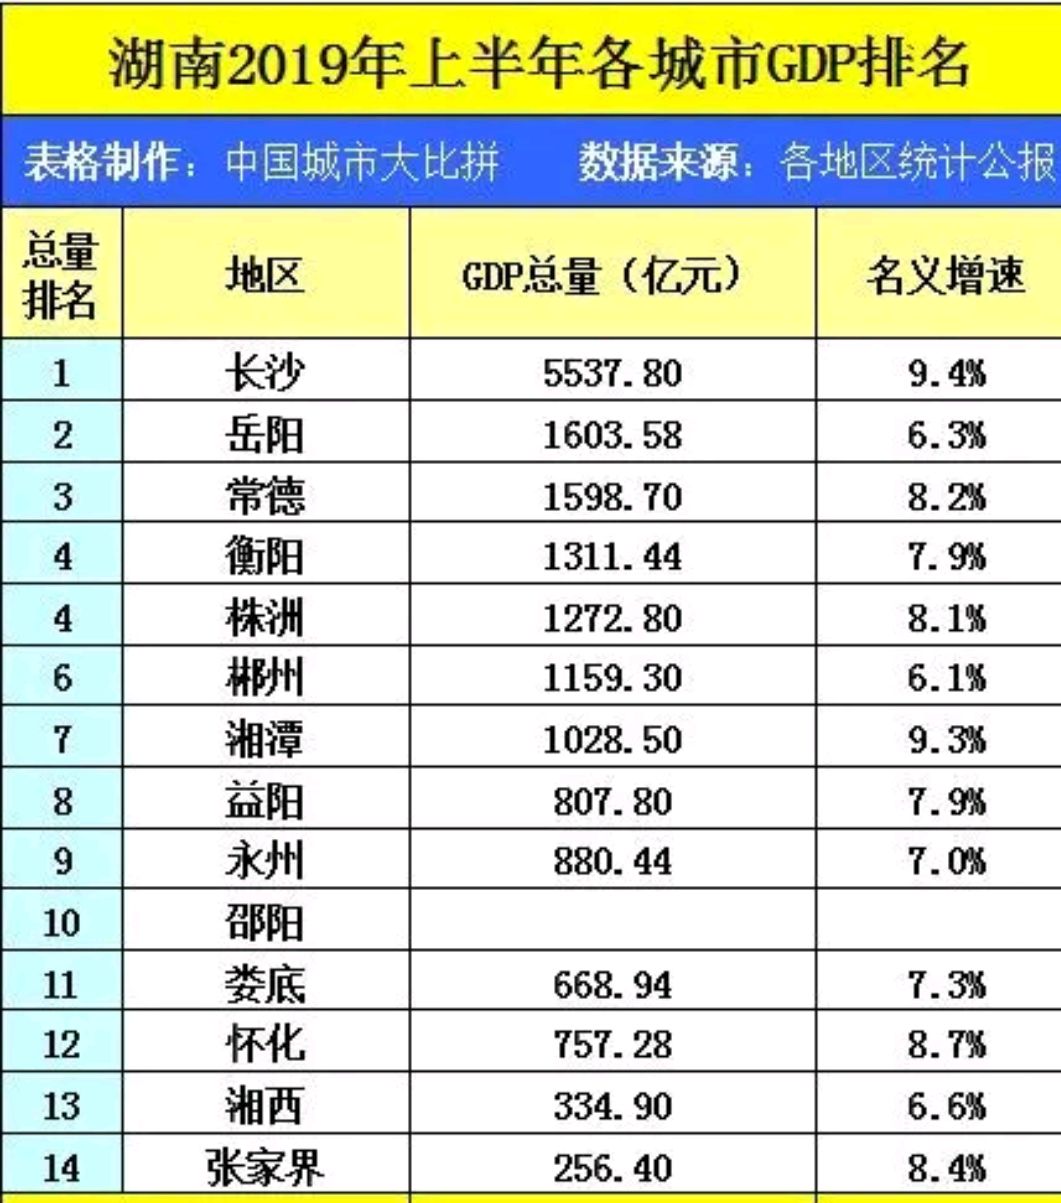 湖南省2019年城市gdp排名,长沙,岳阳,常德排前三,你怎么看?